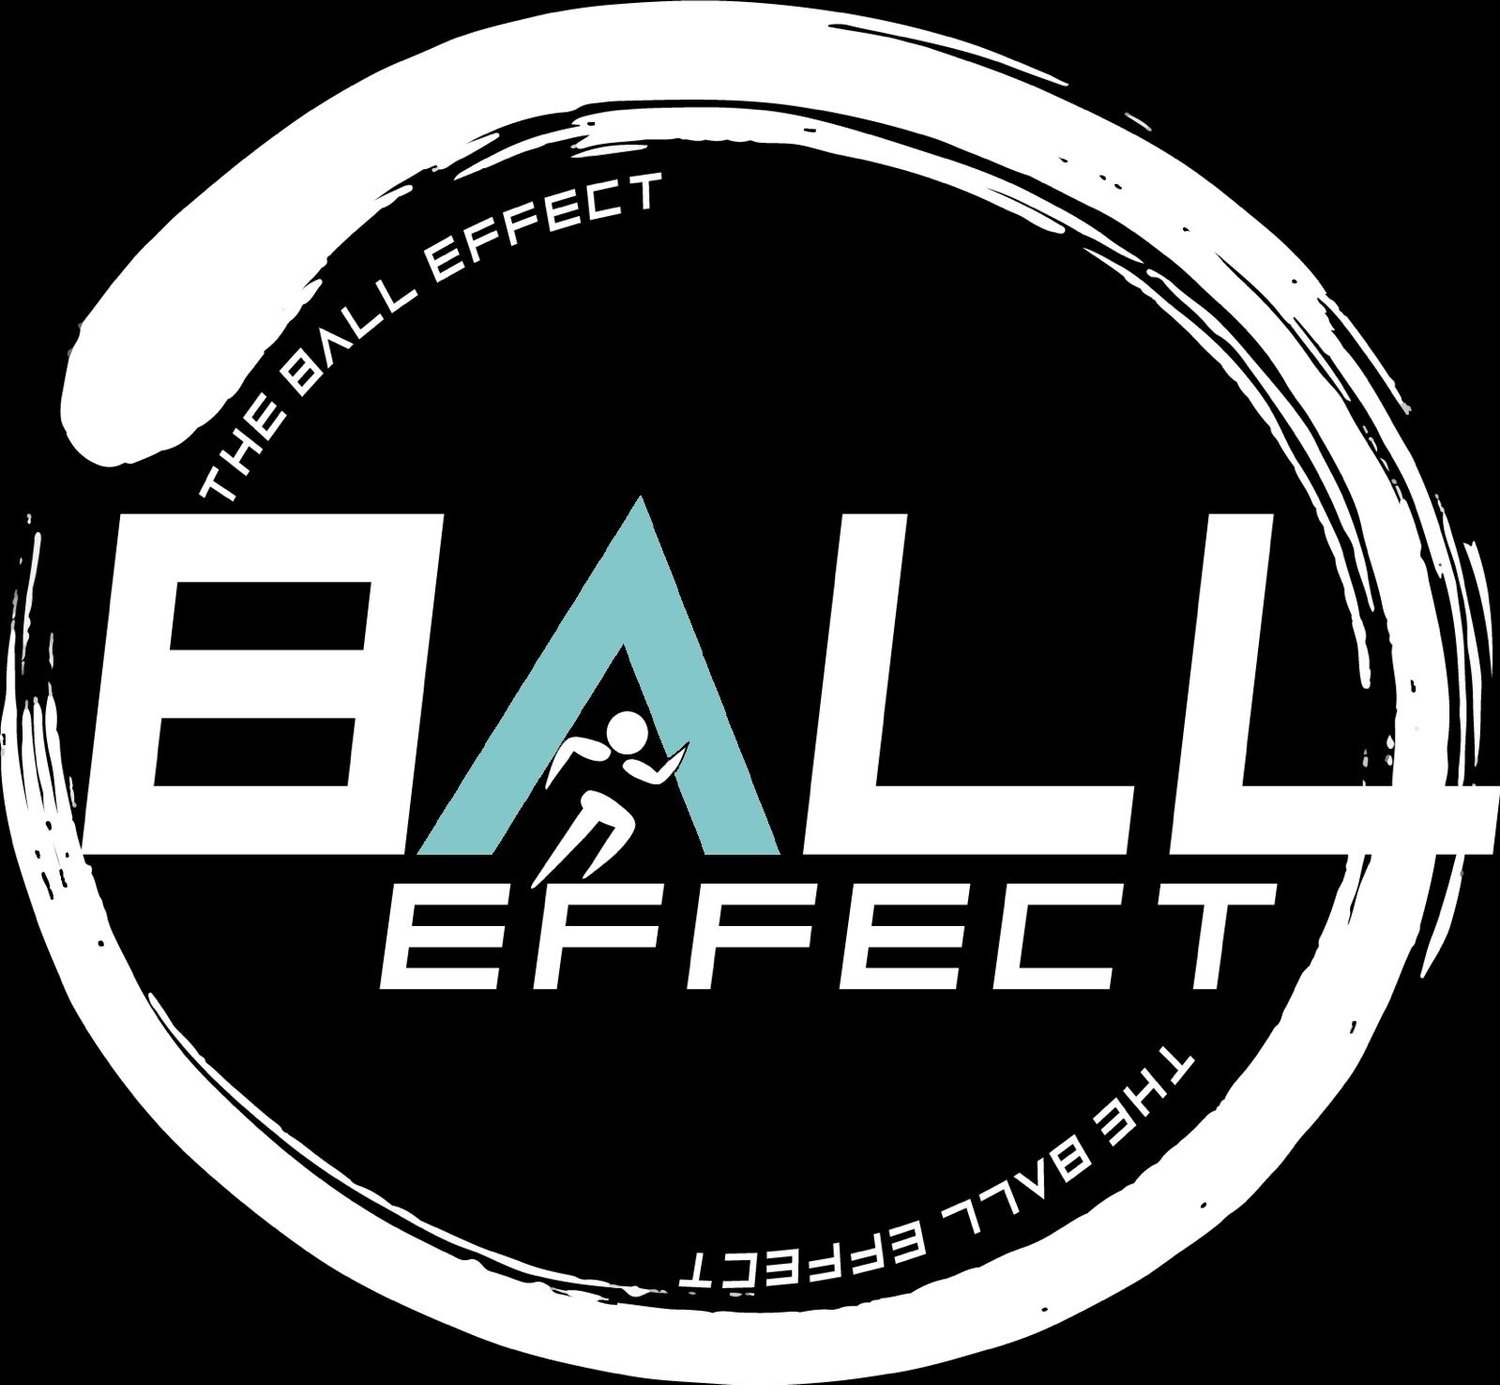 www.theballeffect.com